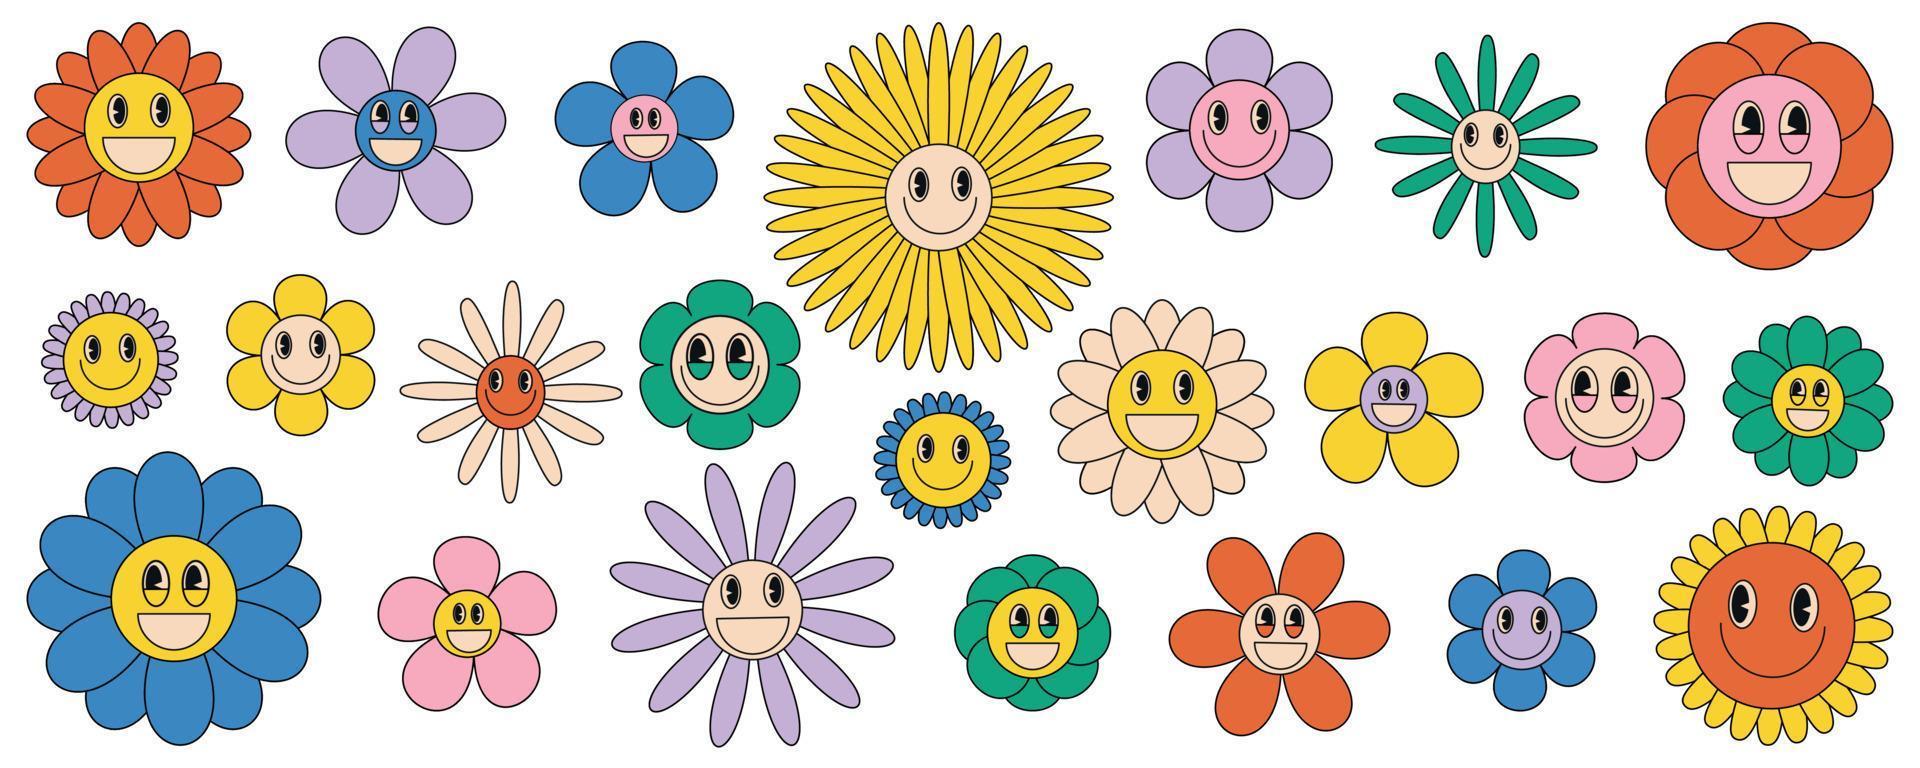 conjunto maravilloso margarita flores retro flores con un cara sonrisa en el dibujos animados estilo de el años 70 un conjunto de pegatinas sonriente en un dibujos animados estilo. vector